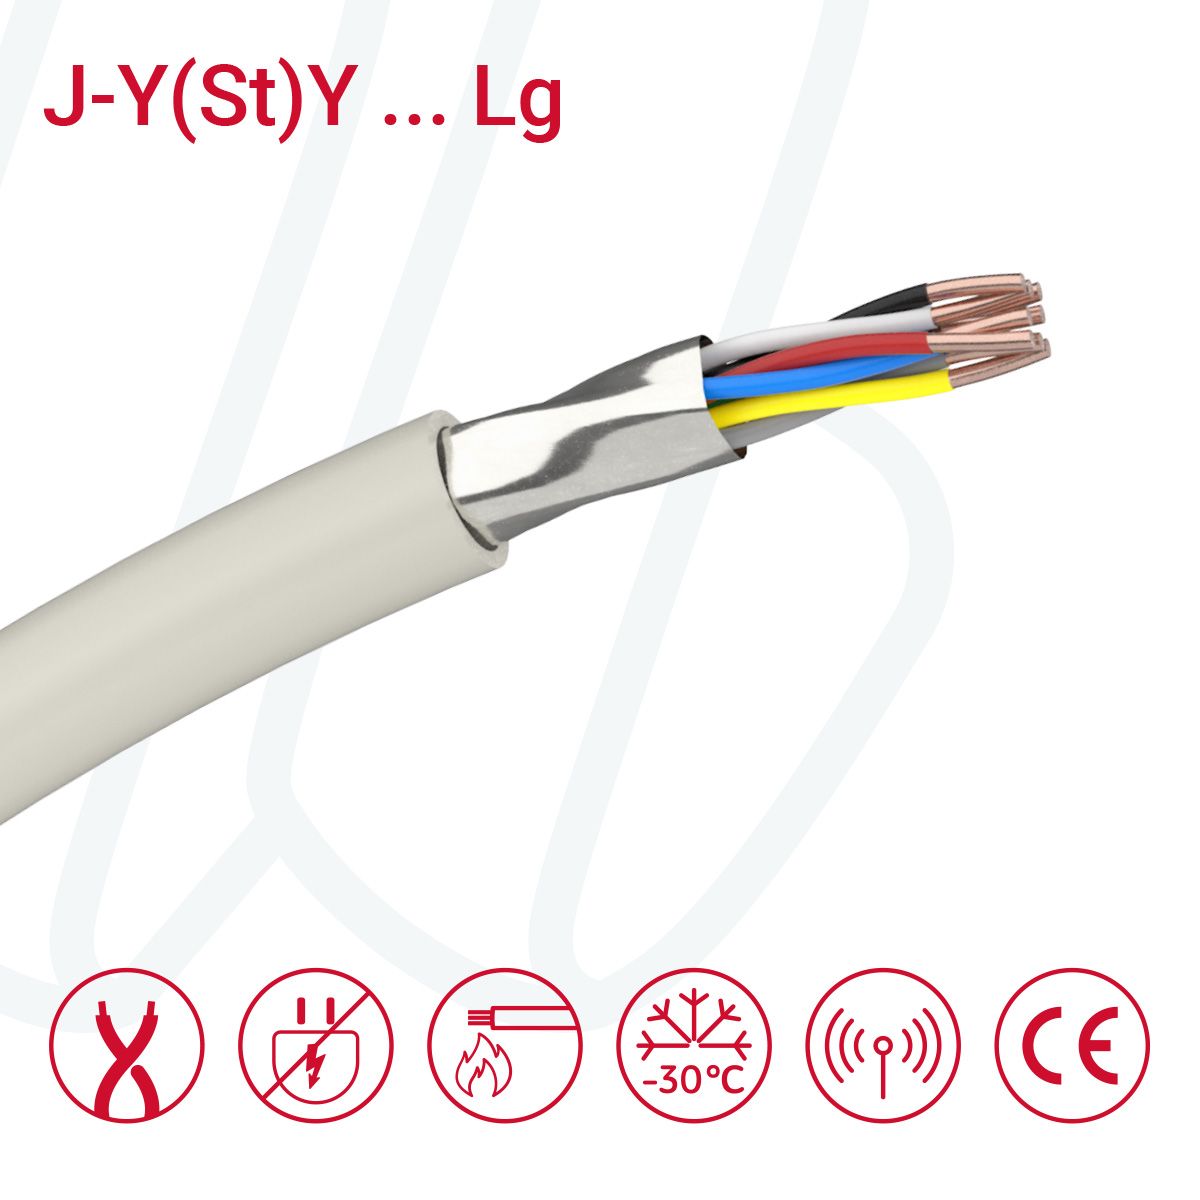 Кабель J-Y(ST)Y...LG 12X2X0.8 (0.52мм²) сірий, 24, 0.52